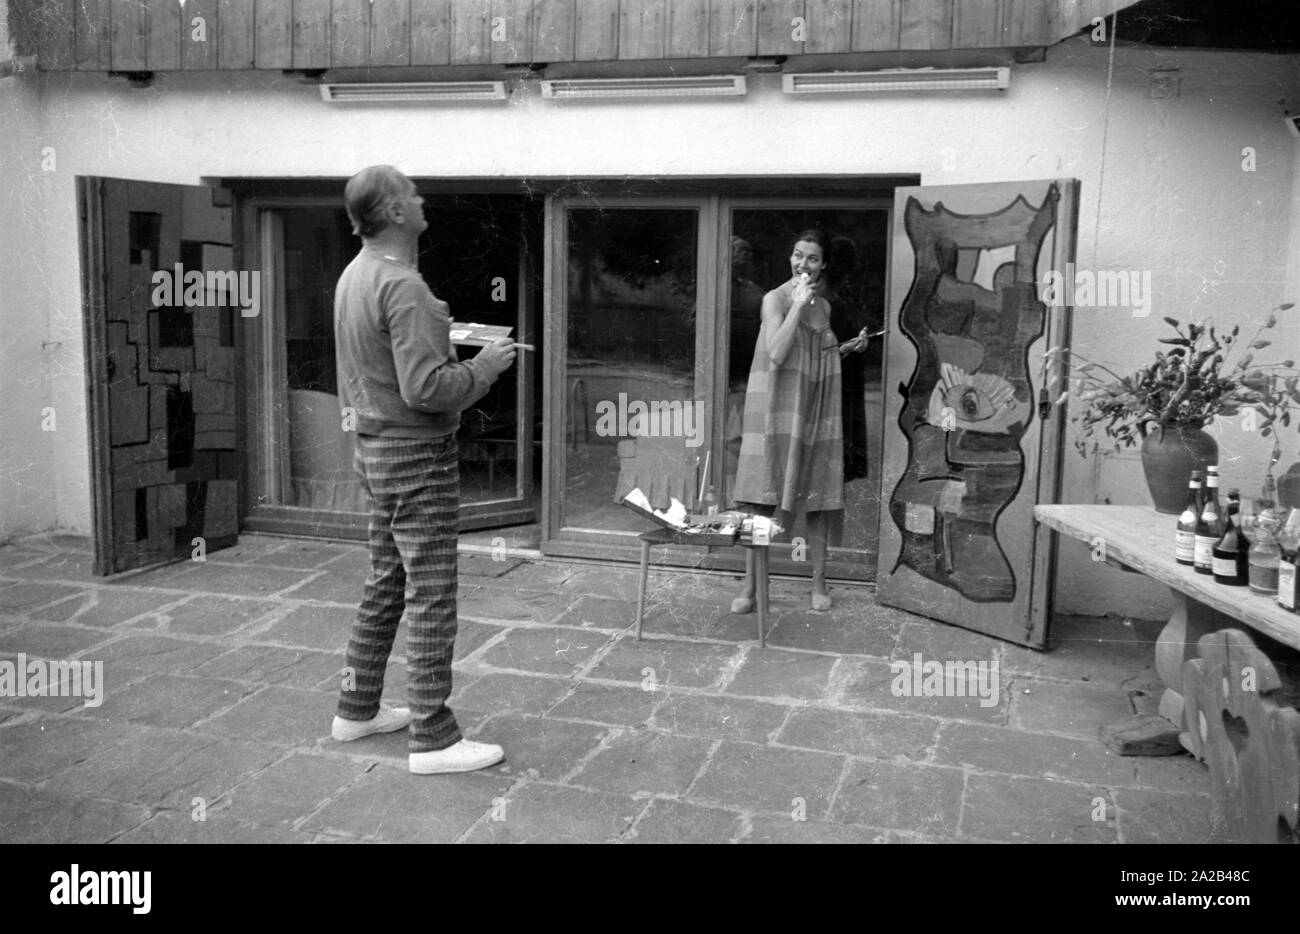 Das Bild zeigt die Schauspieler Curd Jürgens Mit seinem dann - Frau Simone Bicheron beim Malen Zwei große Holztüren. Sie sind wahrscheinlich die Malerei die Türen ihres neuen Immobilien in Villefranche-sur-Mer in Südfrankreich, von Juergens 1959 gekauft. Stockfoto